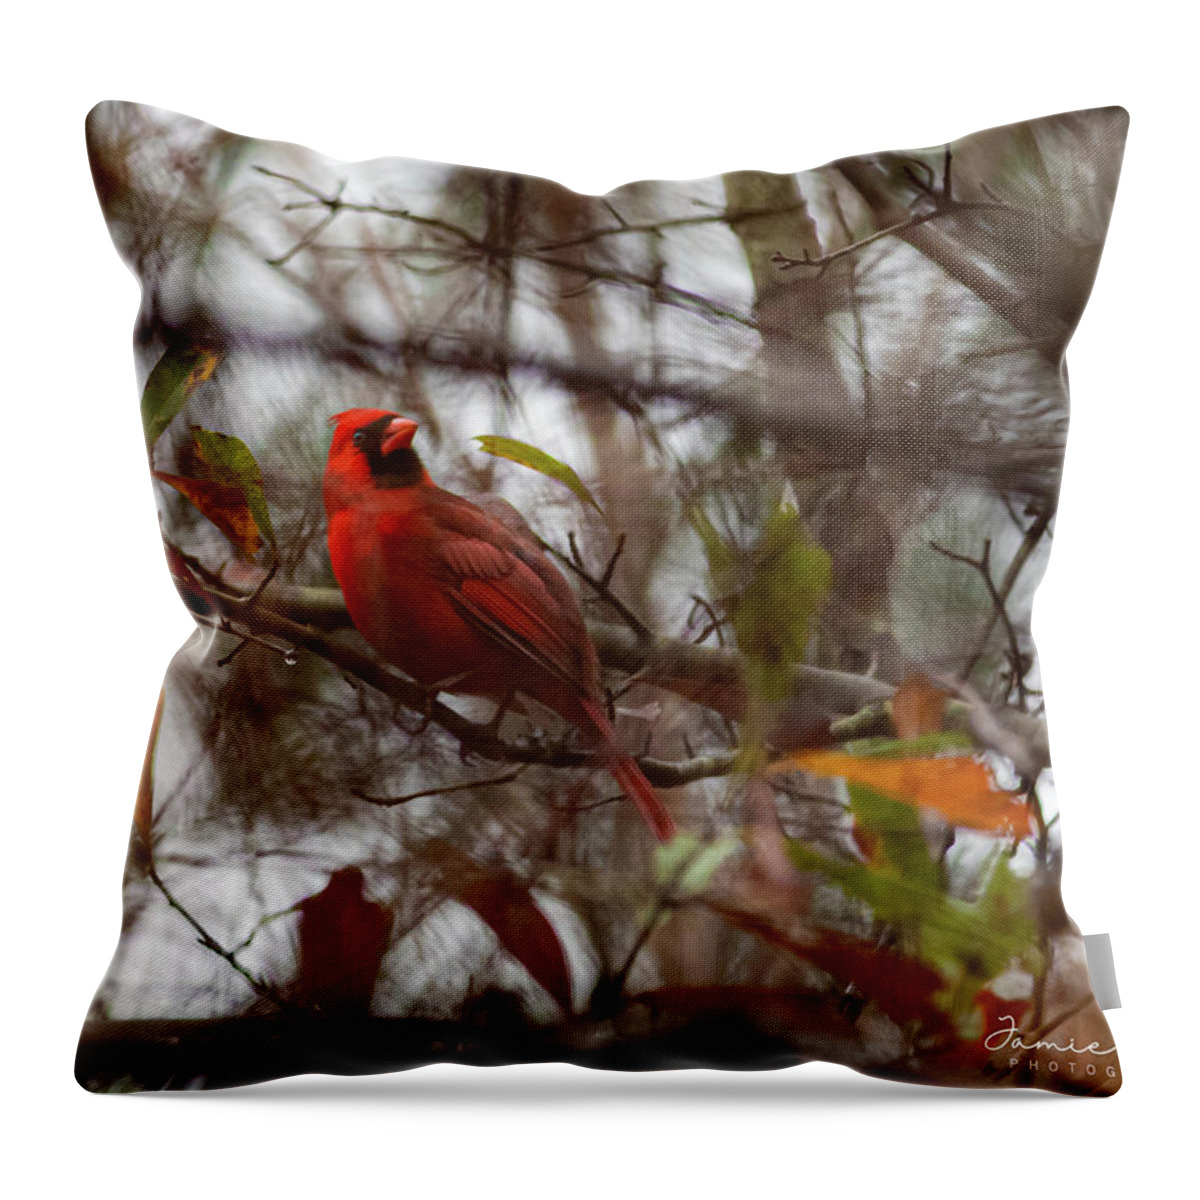 Bird Throw Pillow featuring the photograph Redbird by Jamie Tyler